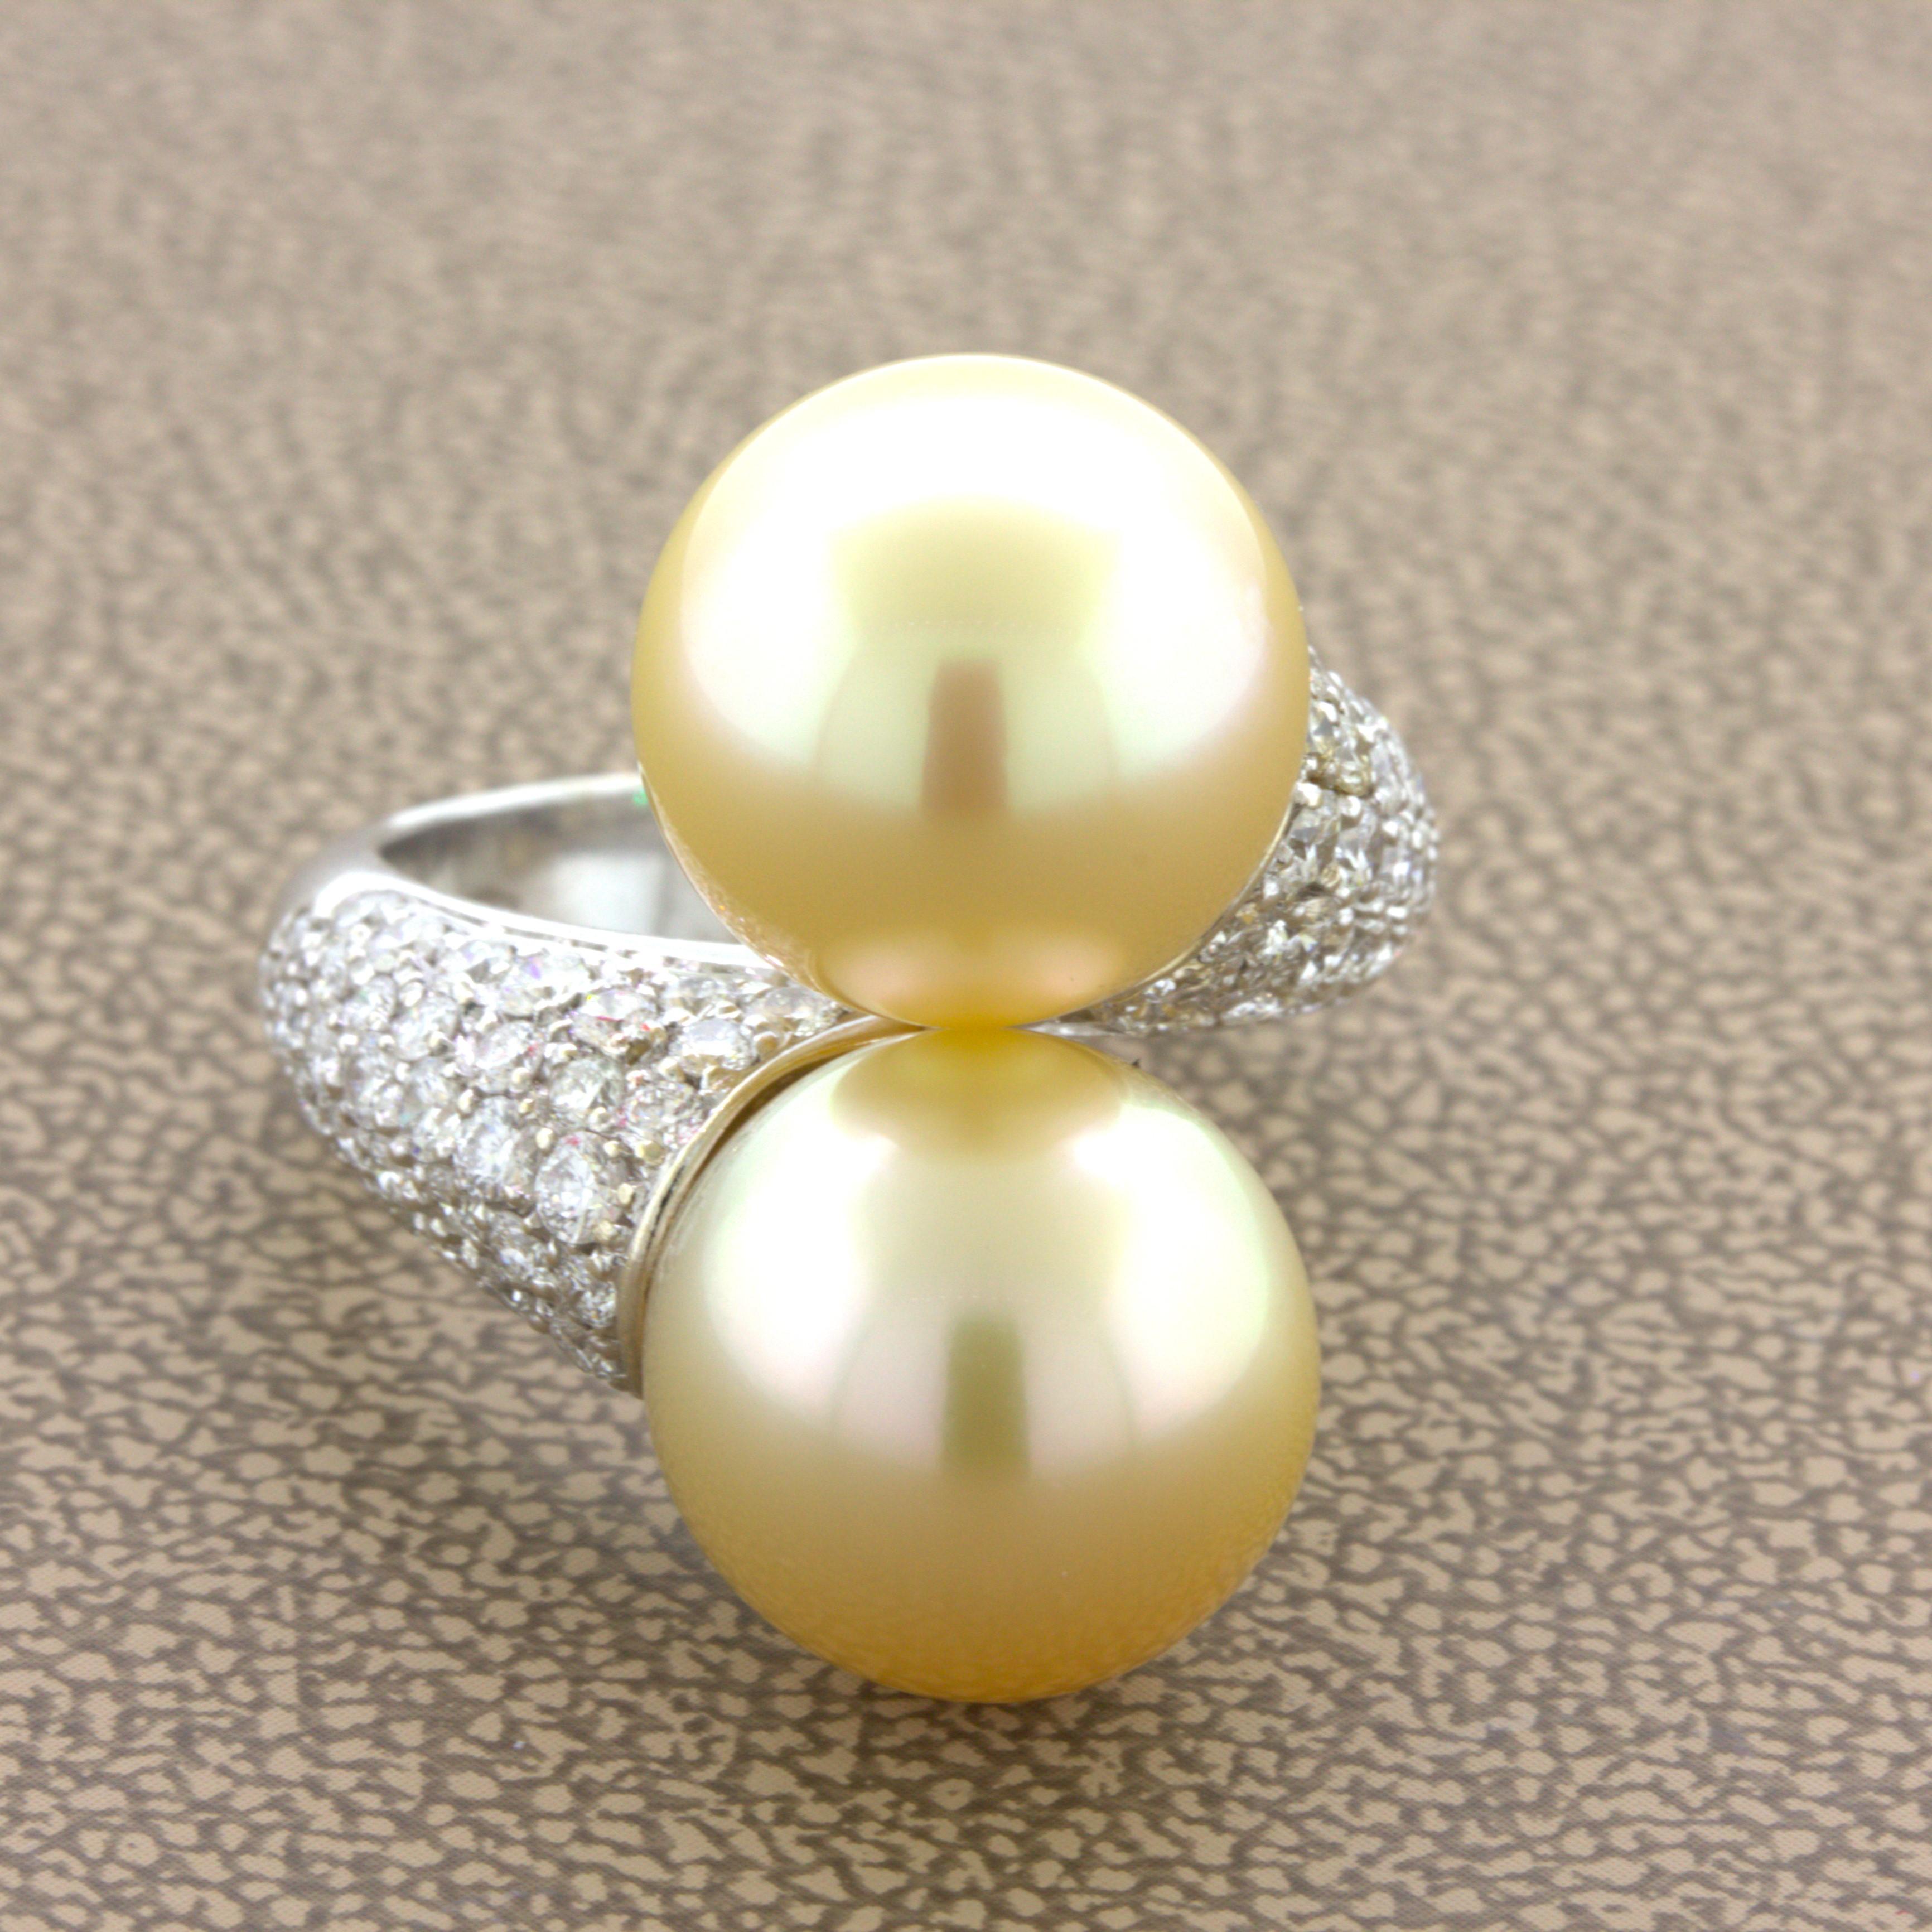 Ein eleganter und stilvoller Ring mit zwei goldenen Südseeperlen. Sie haben einen Durchmesser von jeweils 12,5 mm und zeichnen sich durch eine leuchtend goldene Farbe und eine hervorragende Perlmuttqualität aus, die sie im Licht leuchten lässt.